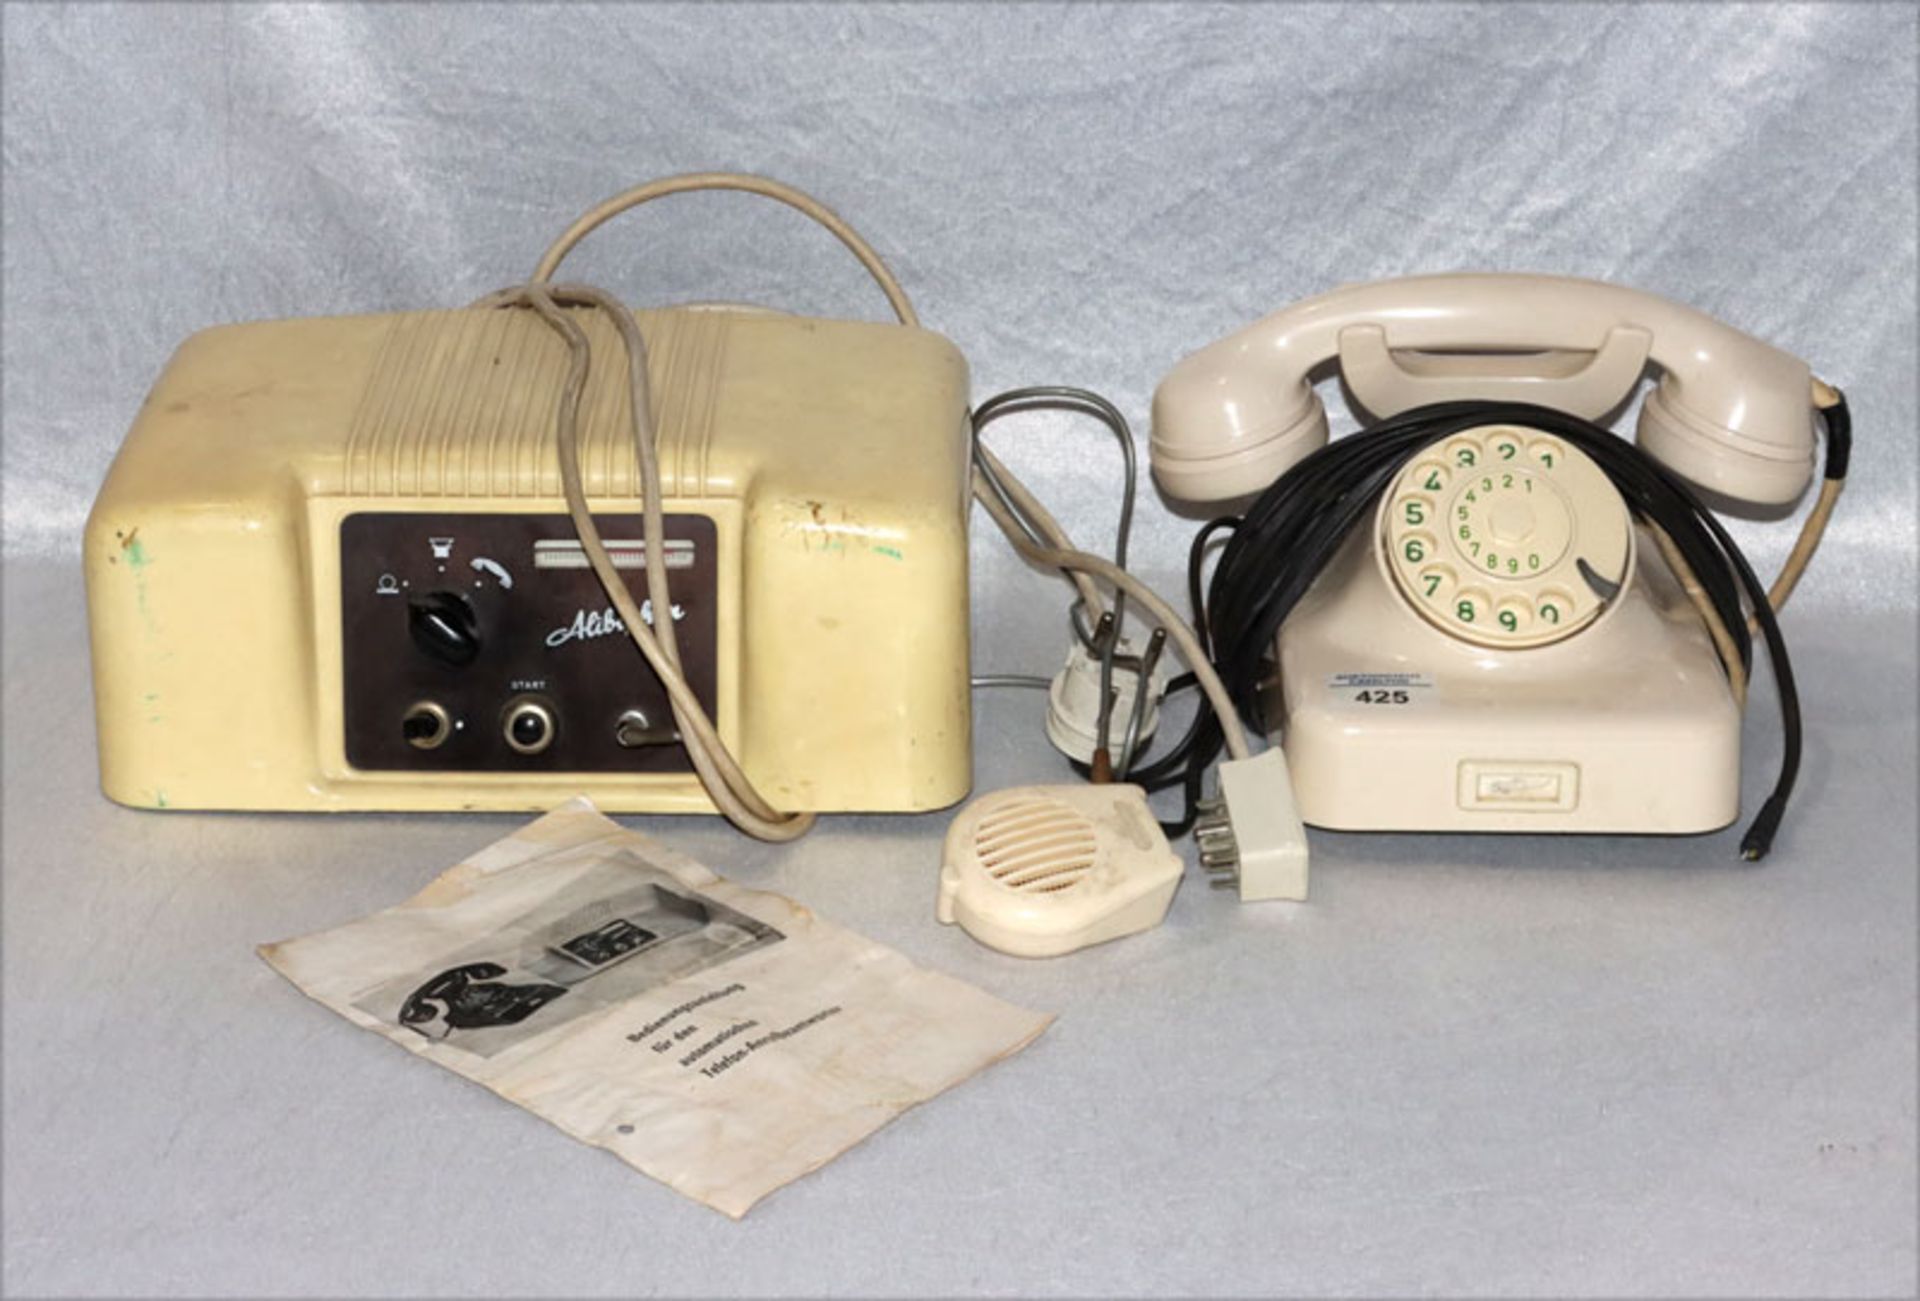 Wählscheiben-Telefon und automatischer Telefon-Anrufbeantworter 'Alibiphon' mit Bedienungsanleitung,